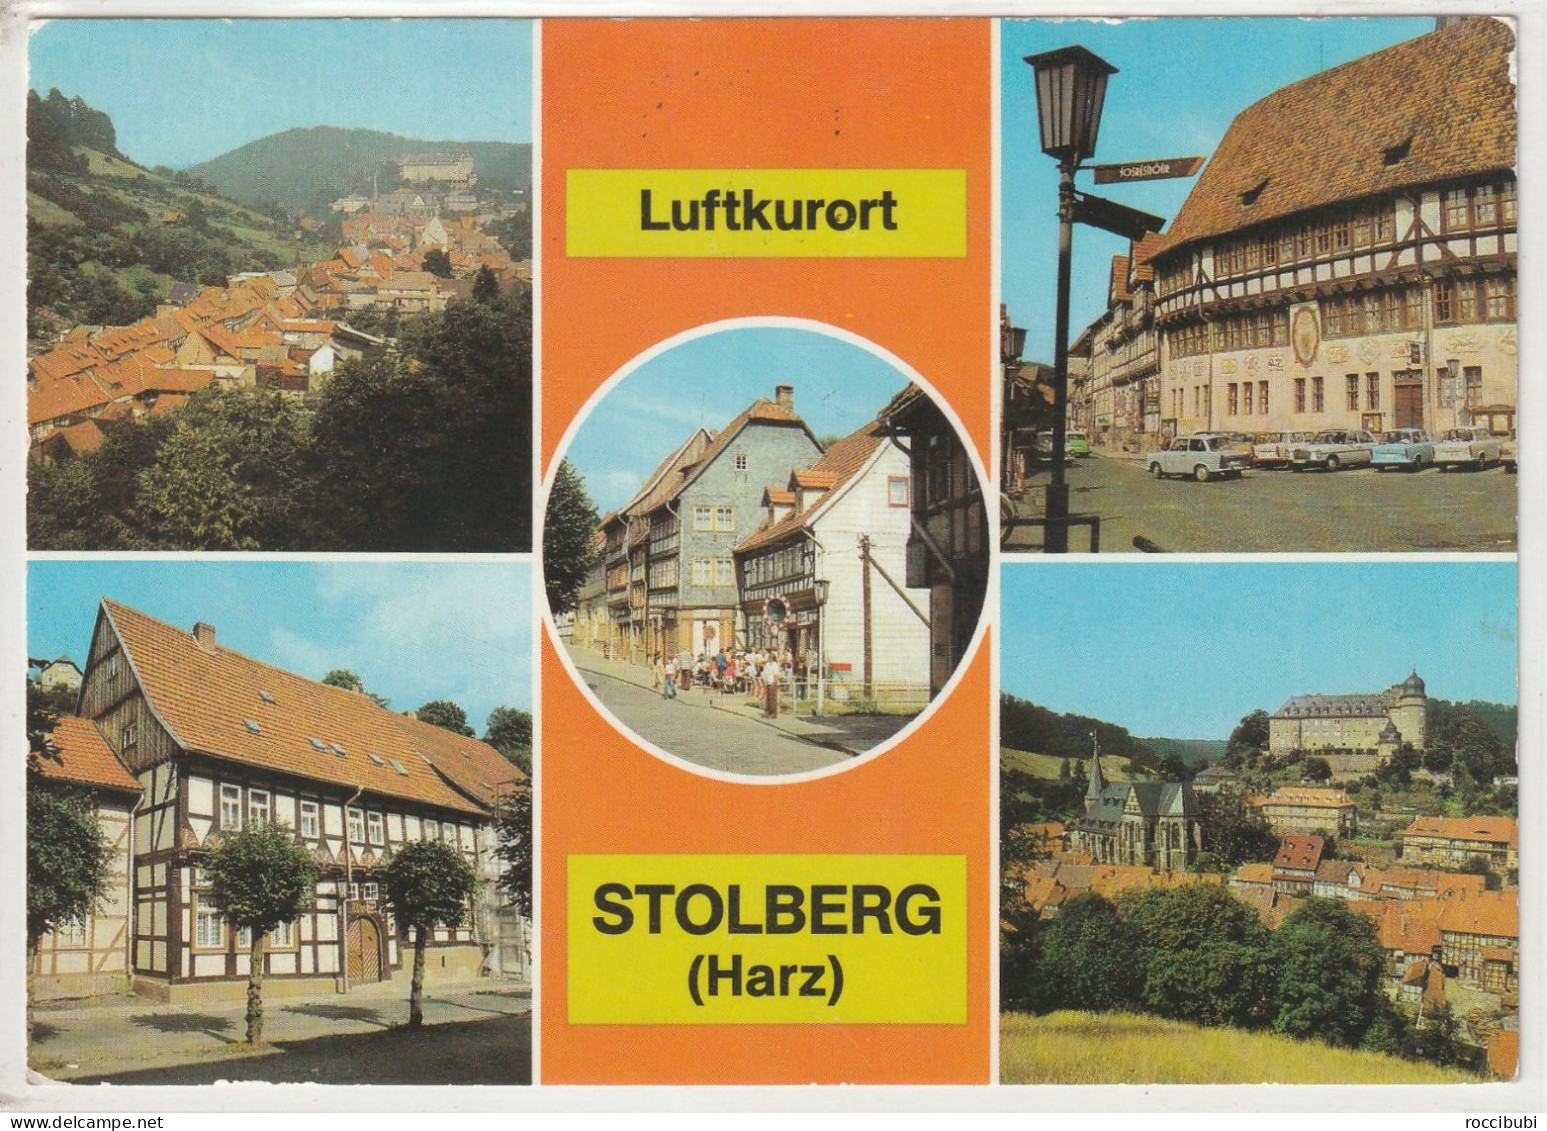 Stolberg (Harz), Sachsen-Anhalt - Stolberg (Harz)